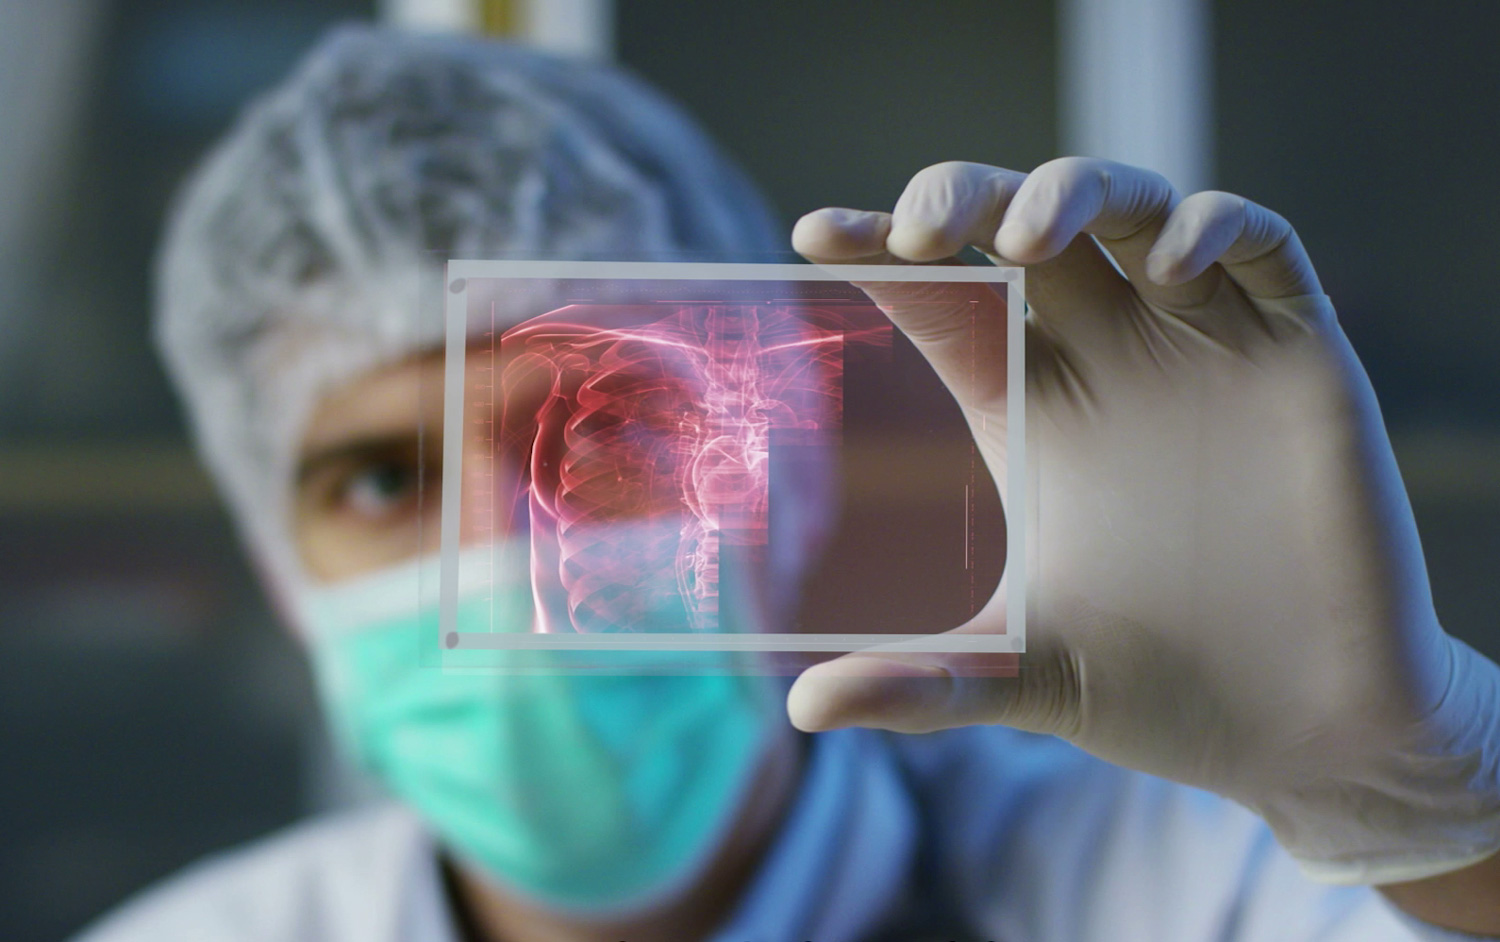 Ein Arzt betrachtet die Patientenanatomie in Form eines Hologramms